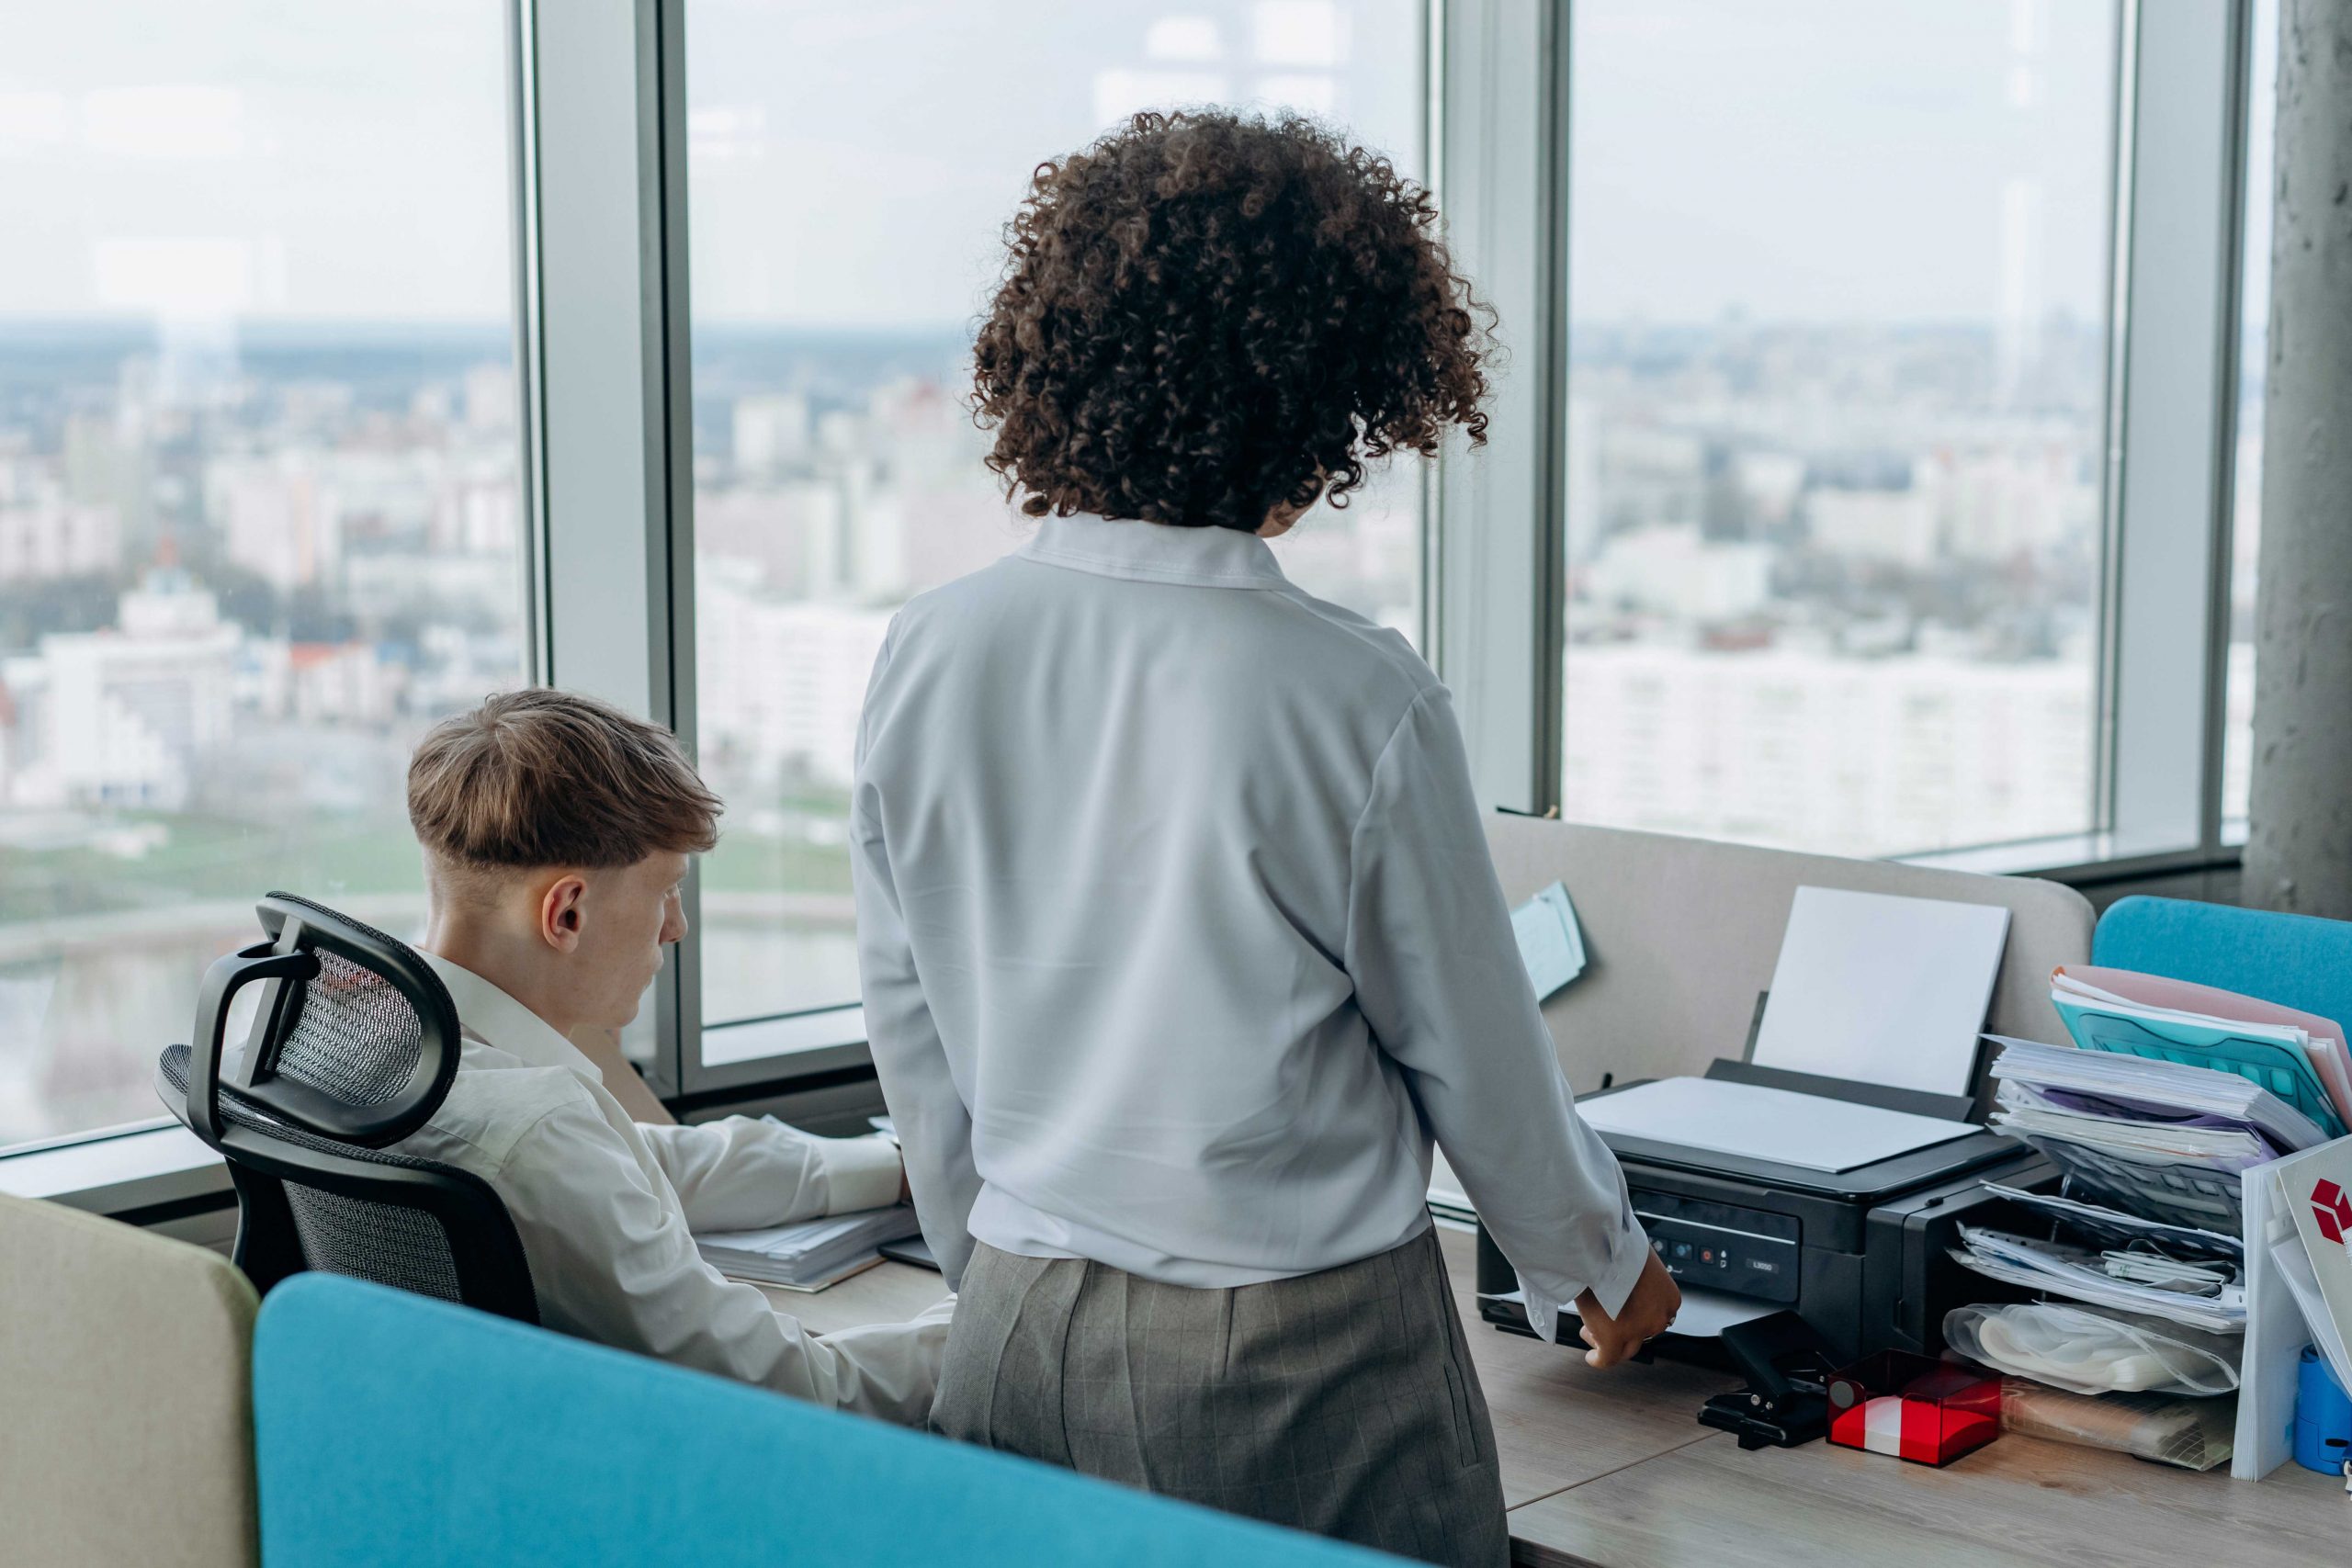 zu sehen sind zwei Büro-Angestellte vor einem Schreibtisch mit einem Drucker drauf. Bild: Pexels/Mikhail Nilov